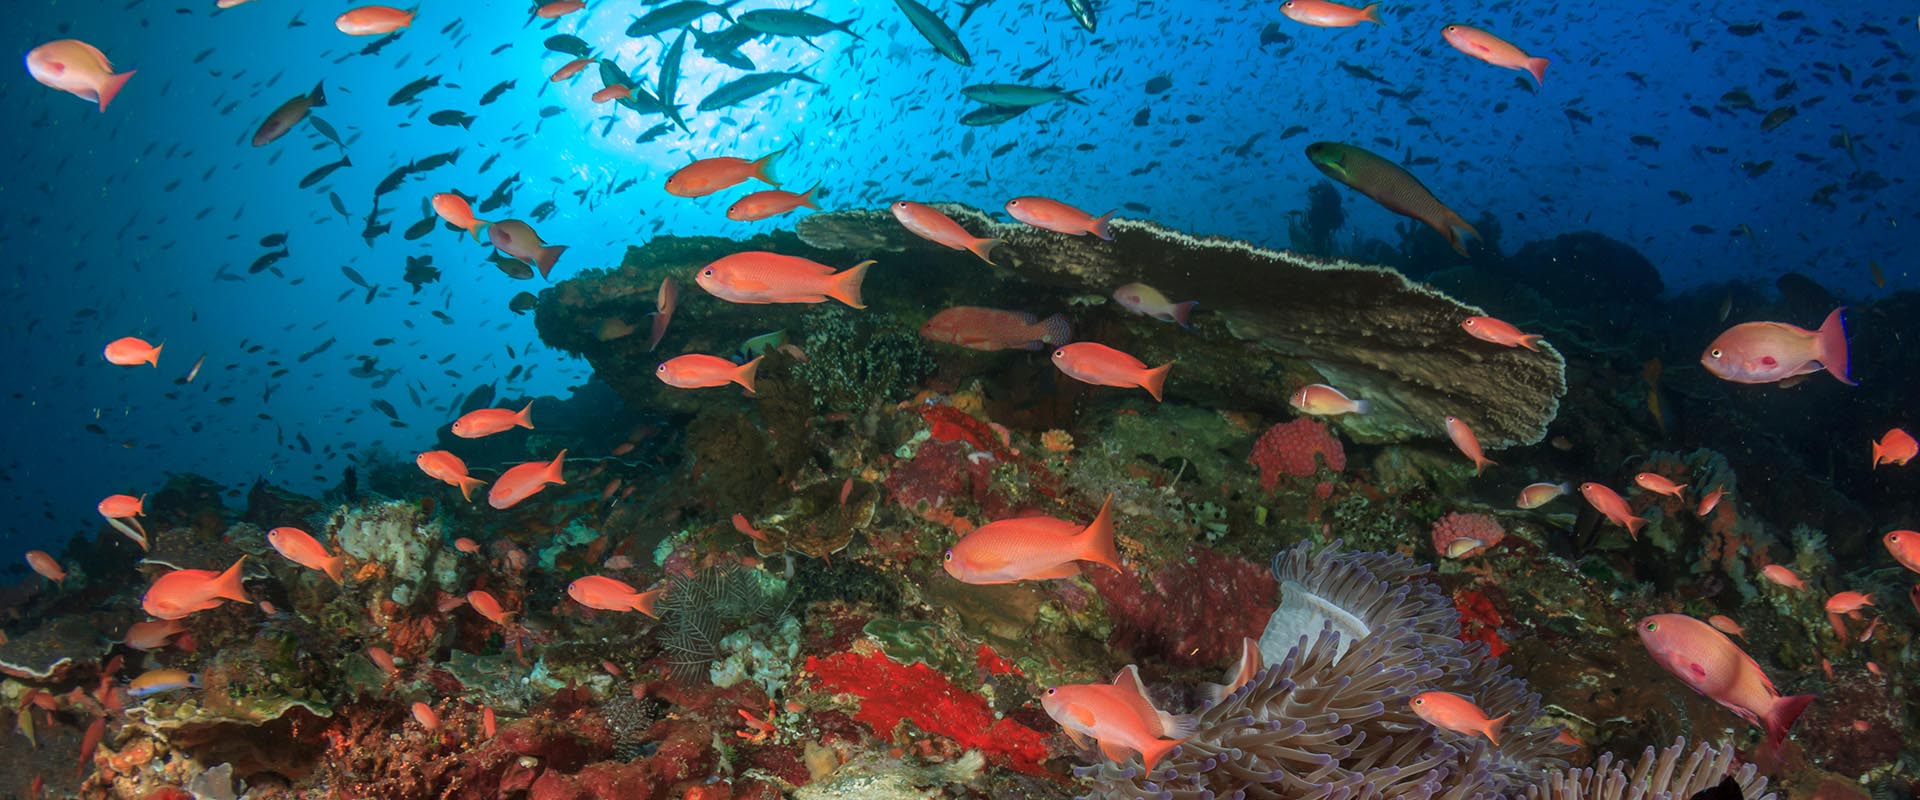 Milln Reef Liveaboard Diving